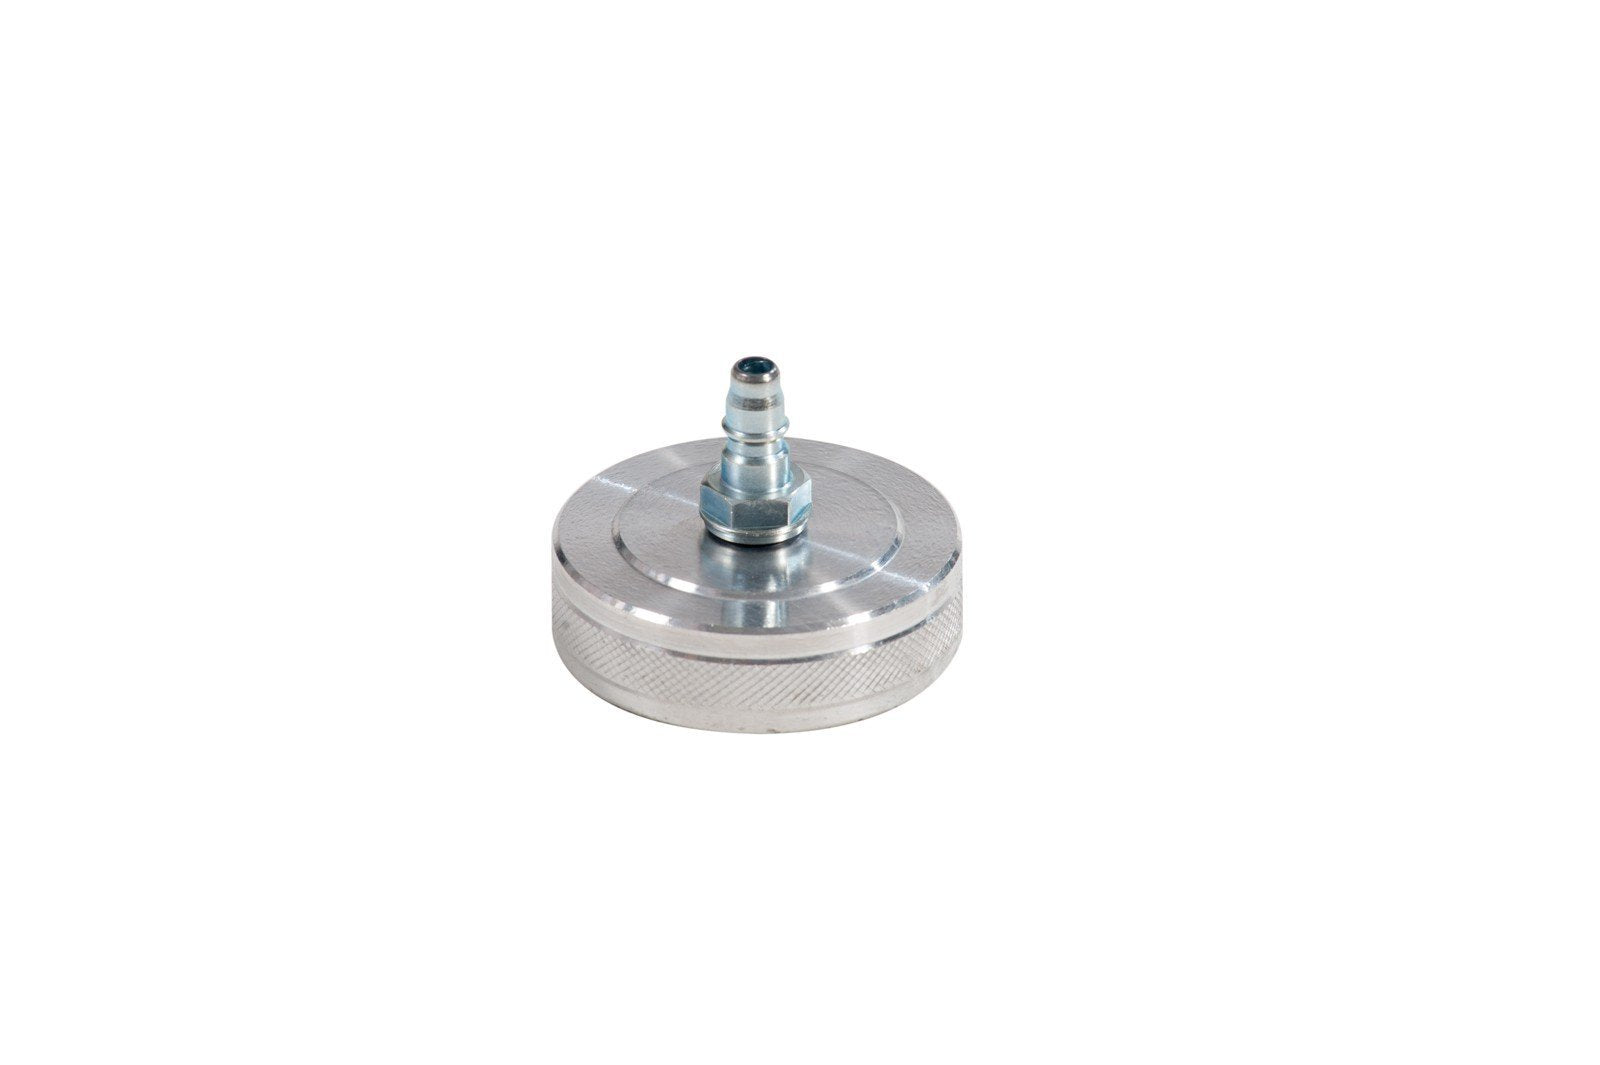 083-1822-000 - Screw plug model 22 diameter 44.5